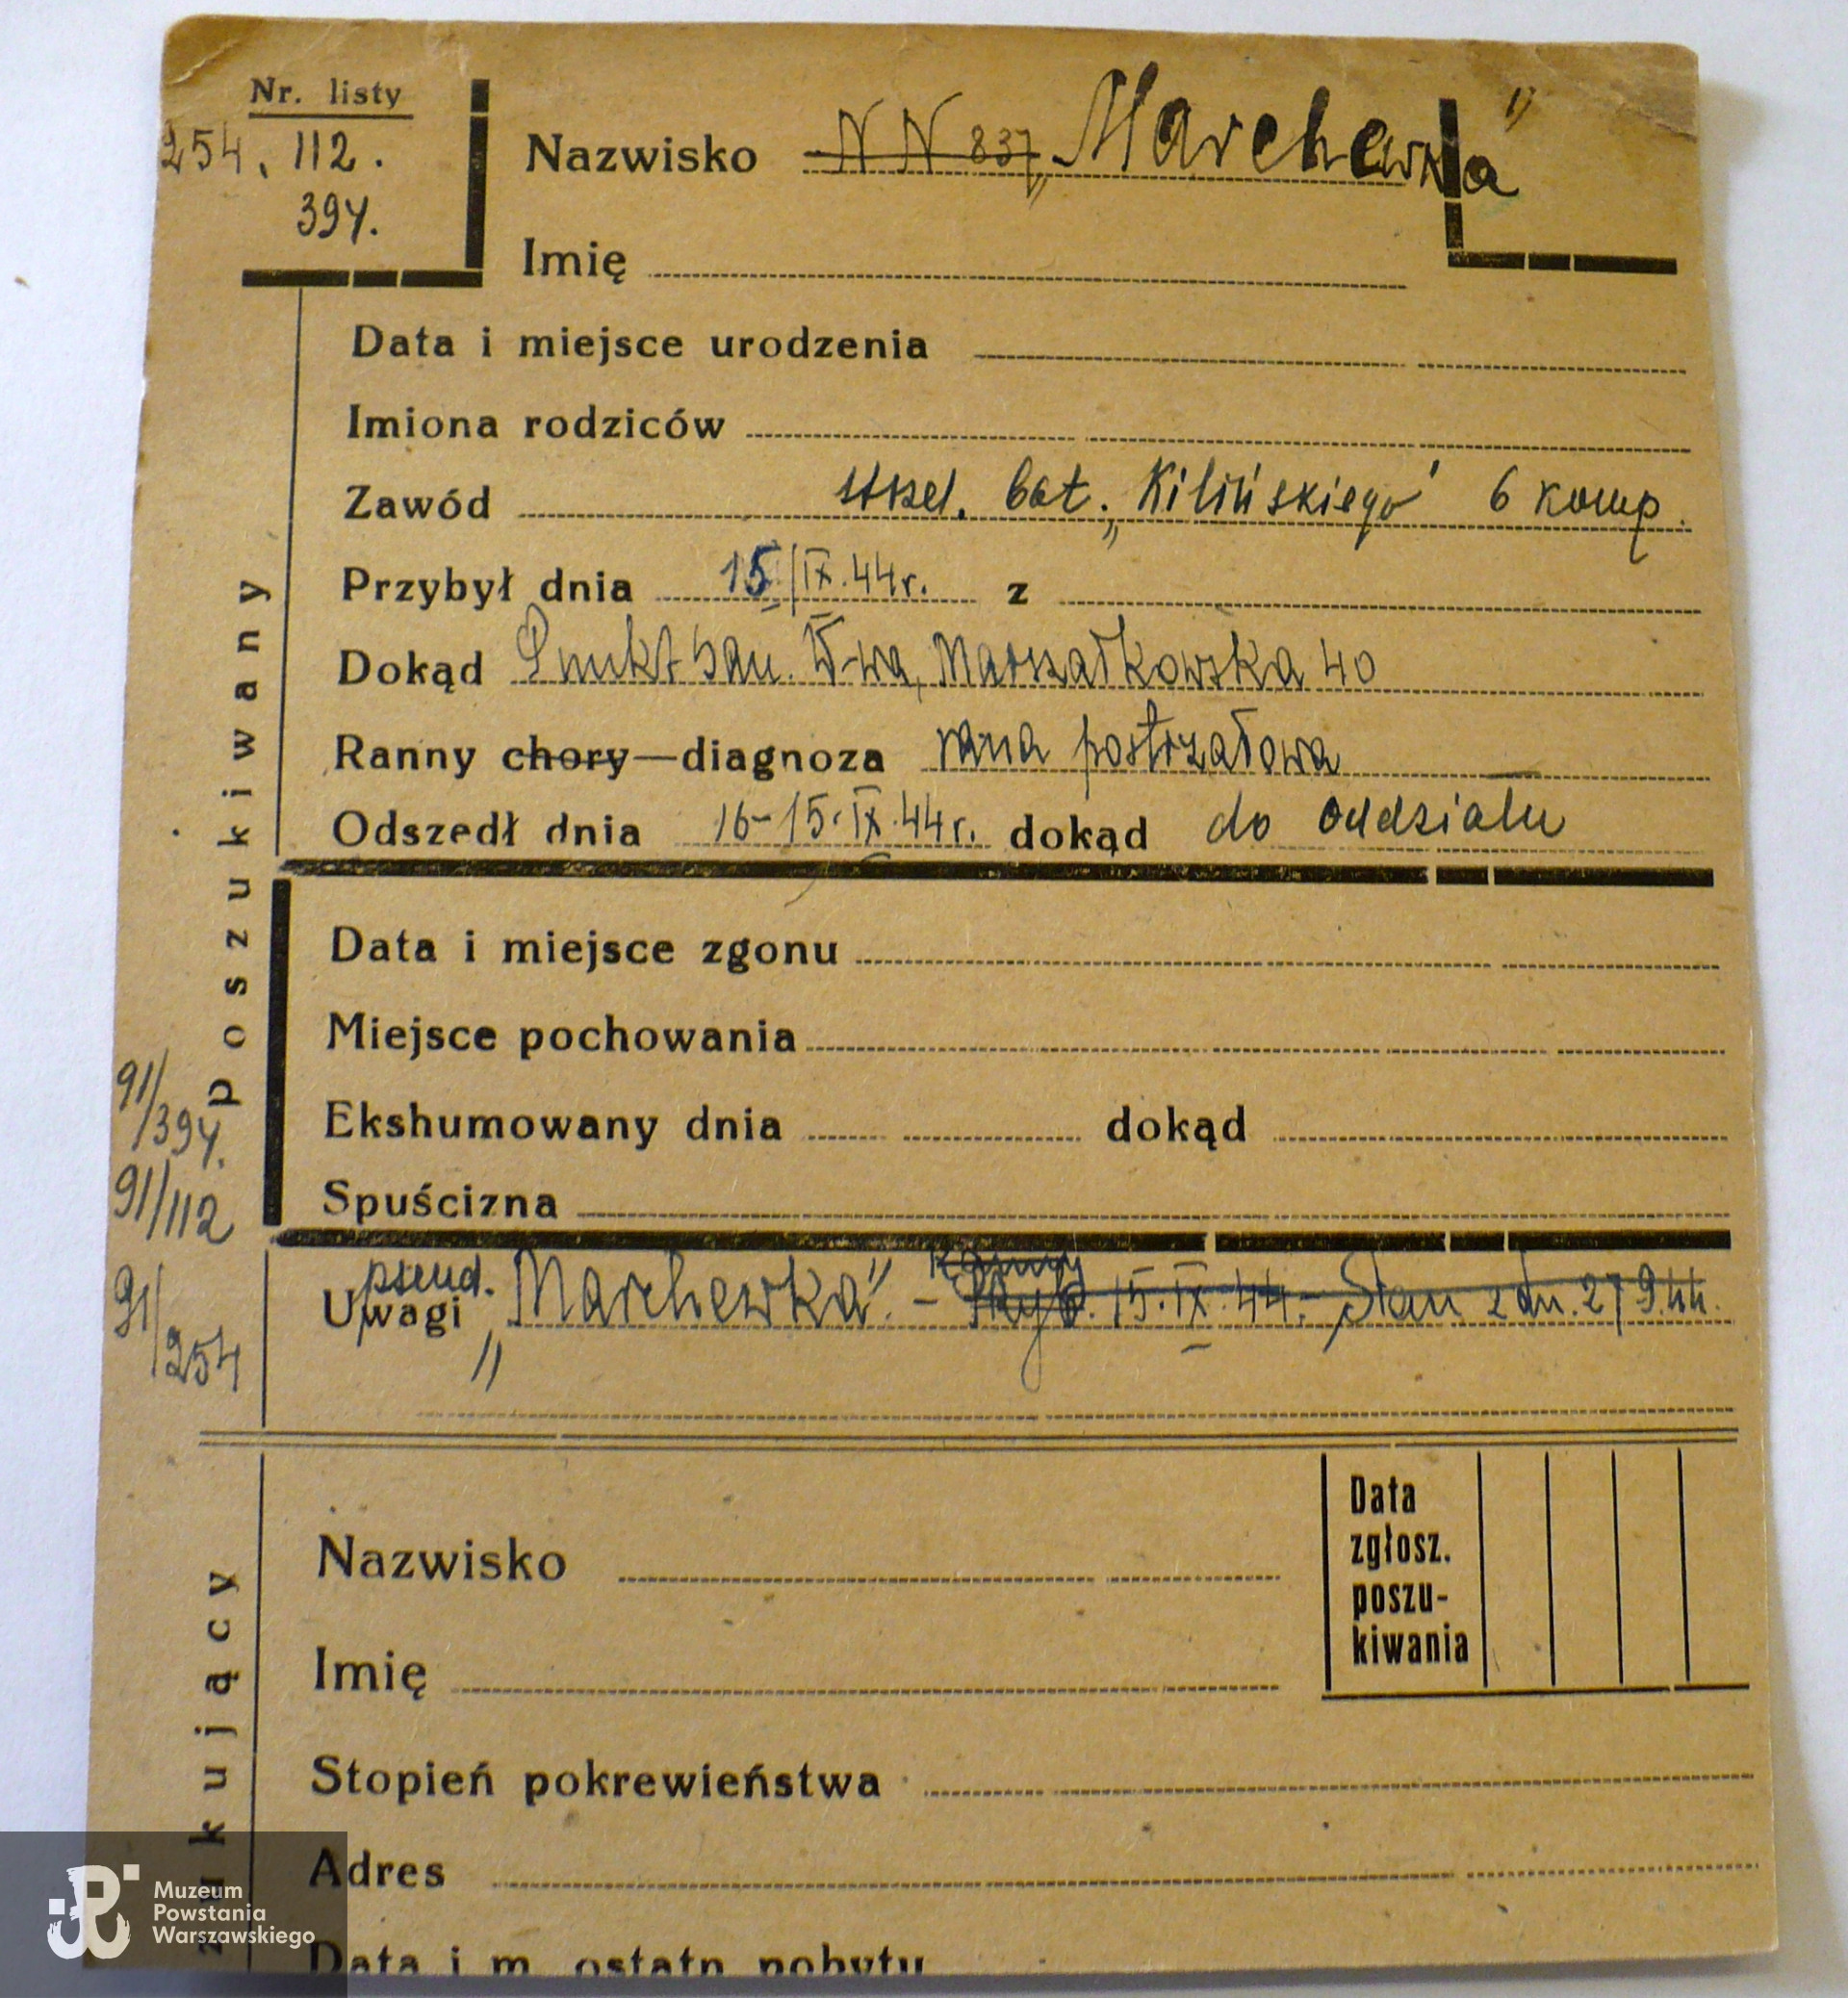 PCK - kartoteka - zapis dotyczy  żołnierza 6. kompanii  bat. Kiliński ps. Marchewka, rannego 15 września 1944 r.  (rana postrzałowa), opatrzonego w punkcie sanitarnym Marszałkowska 40. Porównaj także biogram: strz. Antoni Rosół  ps. Marchewka - 2. kompania  "Szare Szeregi", plut. 165, ochotnik.